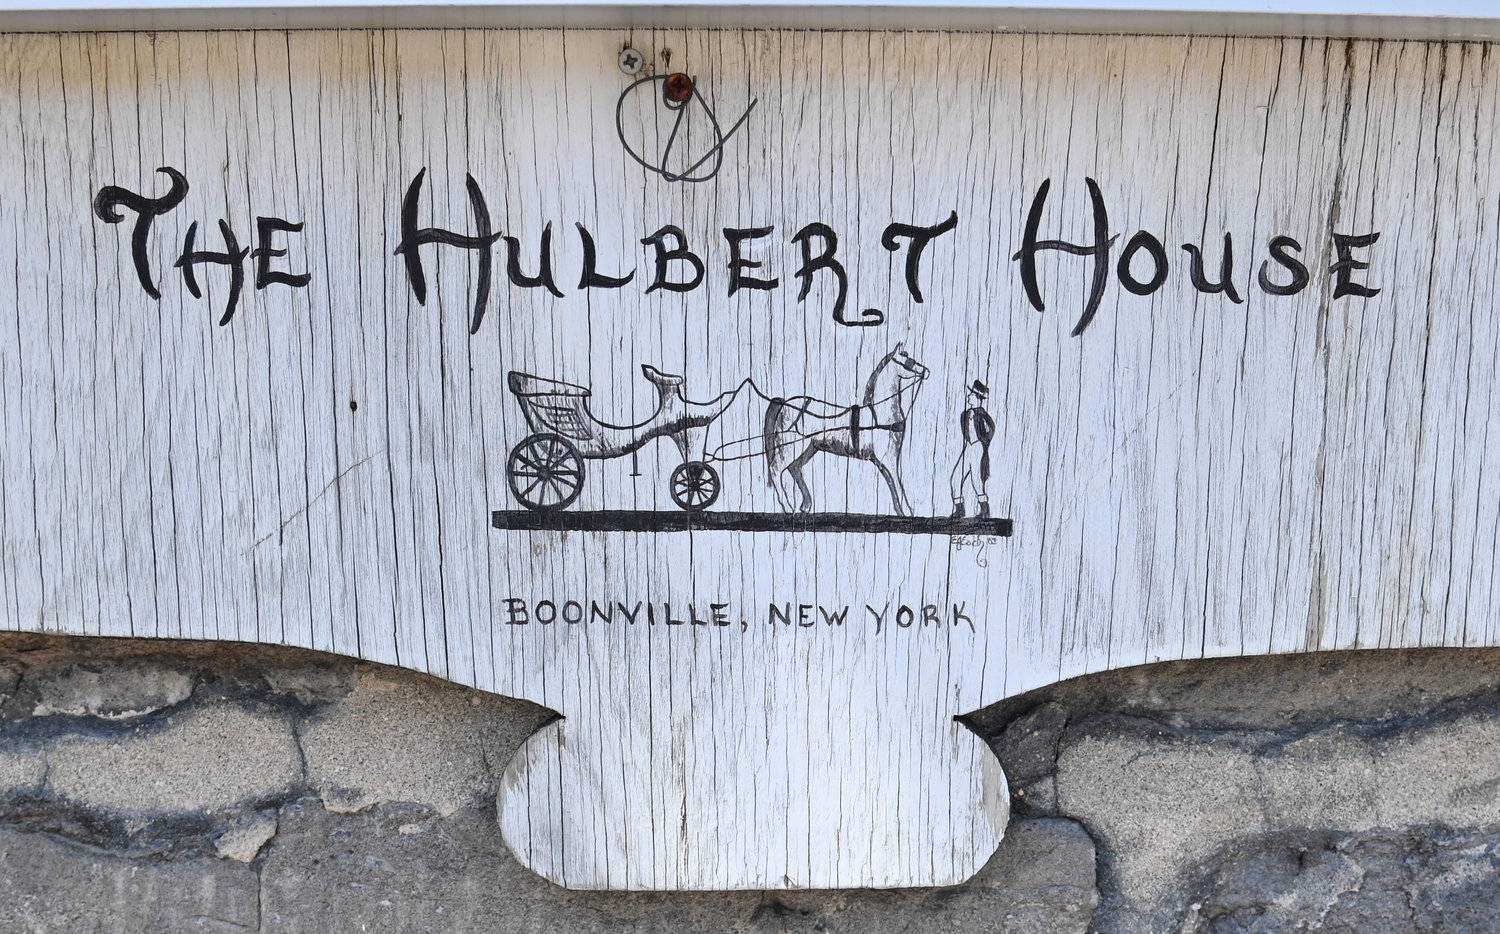 Hulbert House signage.